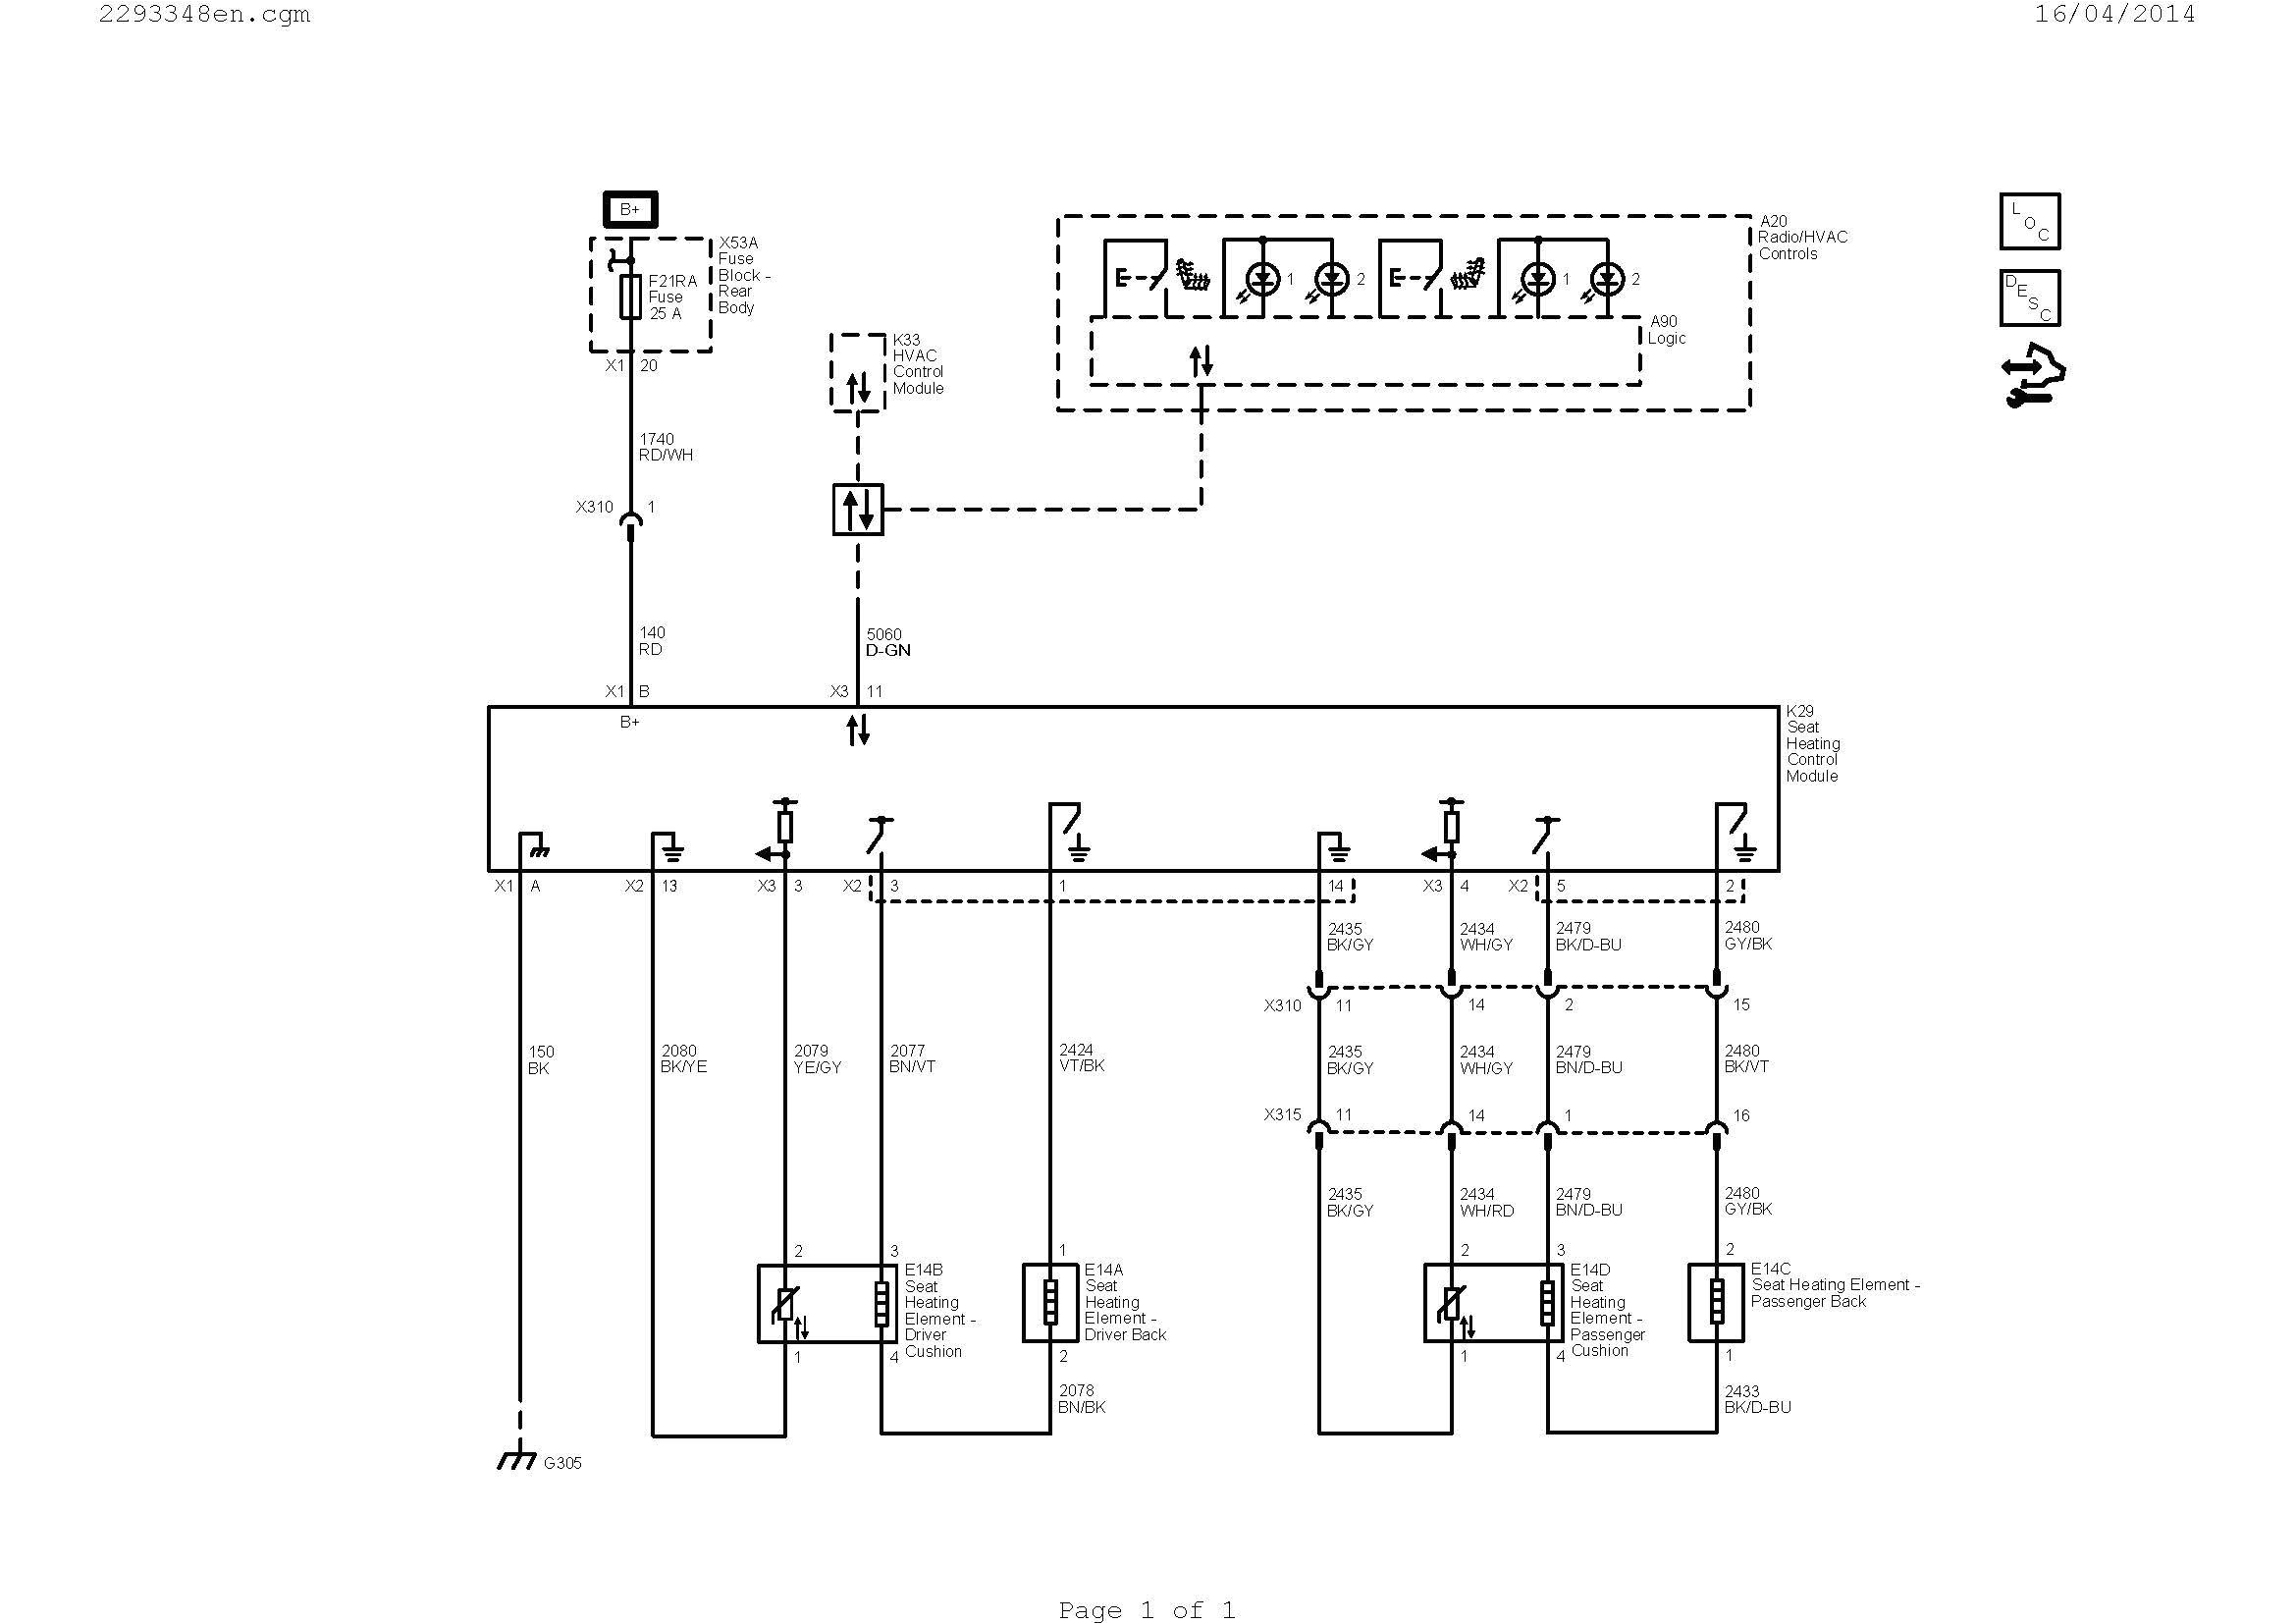 grundfos boiler wiring diagram wiring diagram files grundfos timer wiring diagram grundfos wire diagram